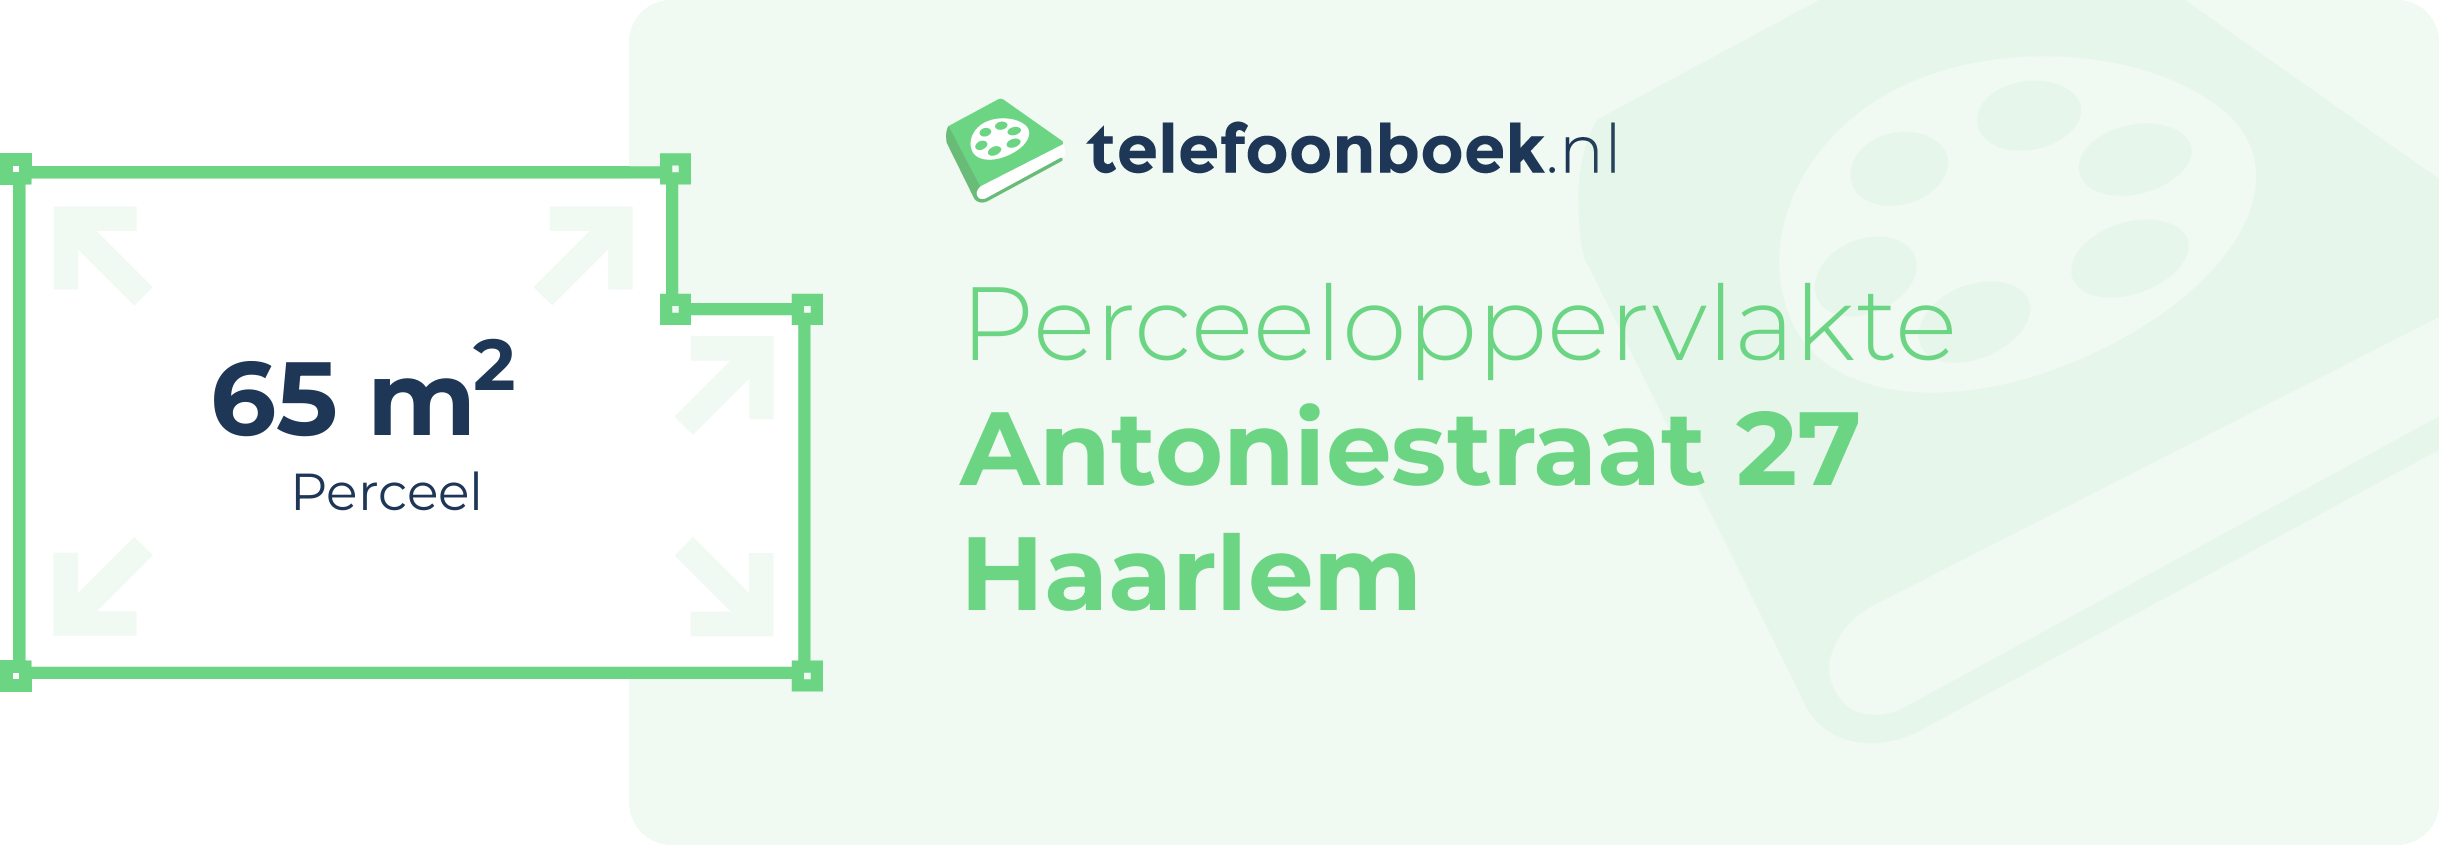 Perceeloppervlakte Antoniestraat 27 Haarlem